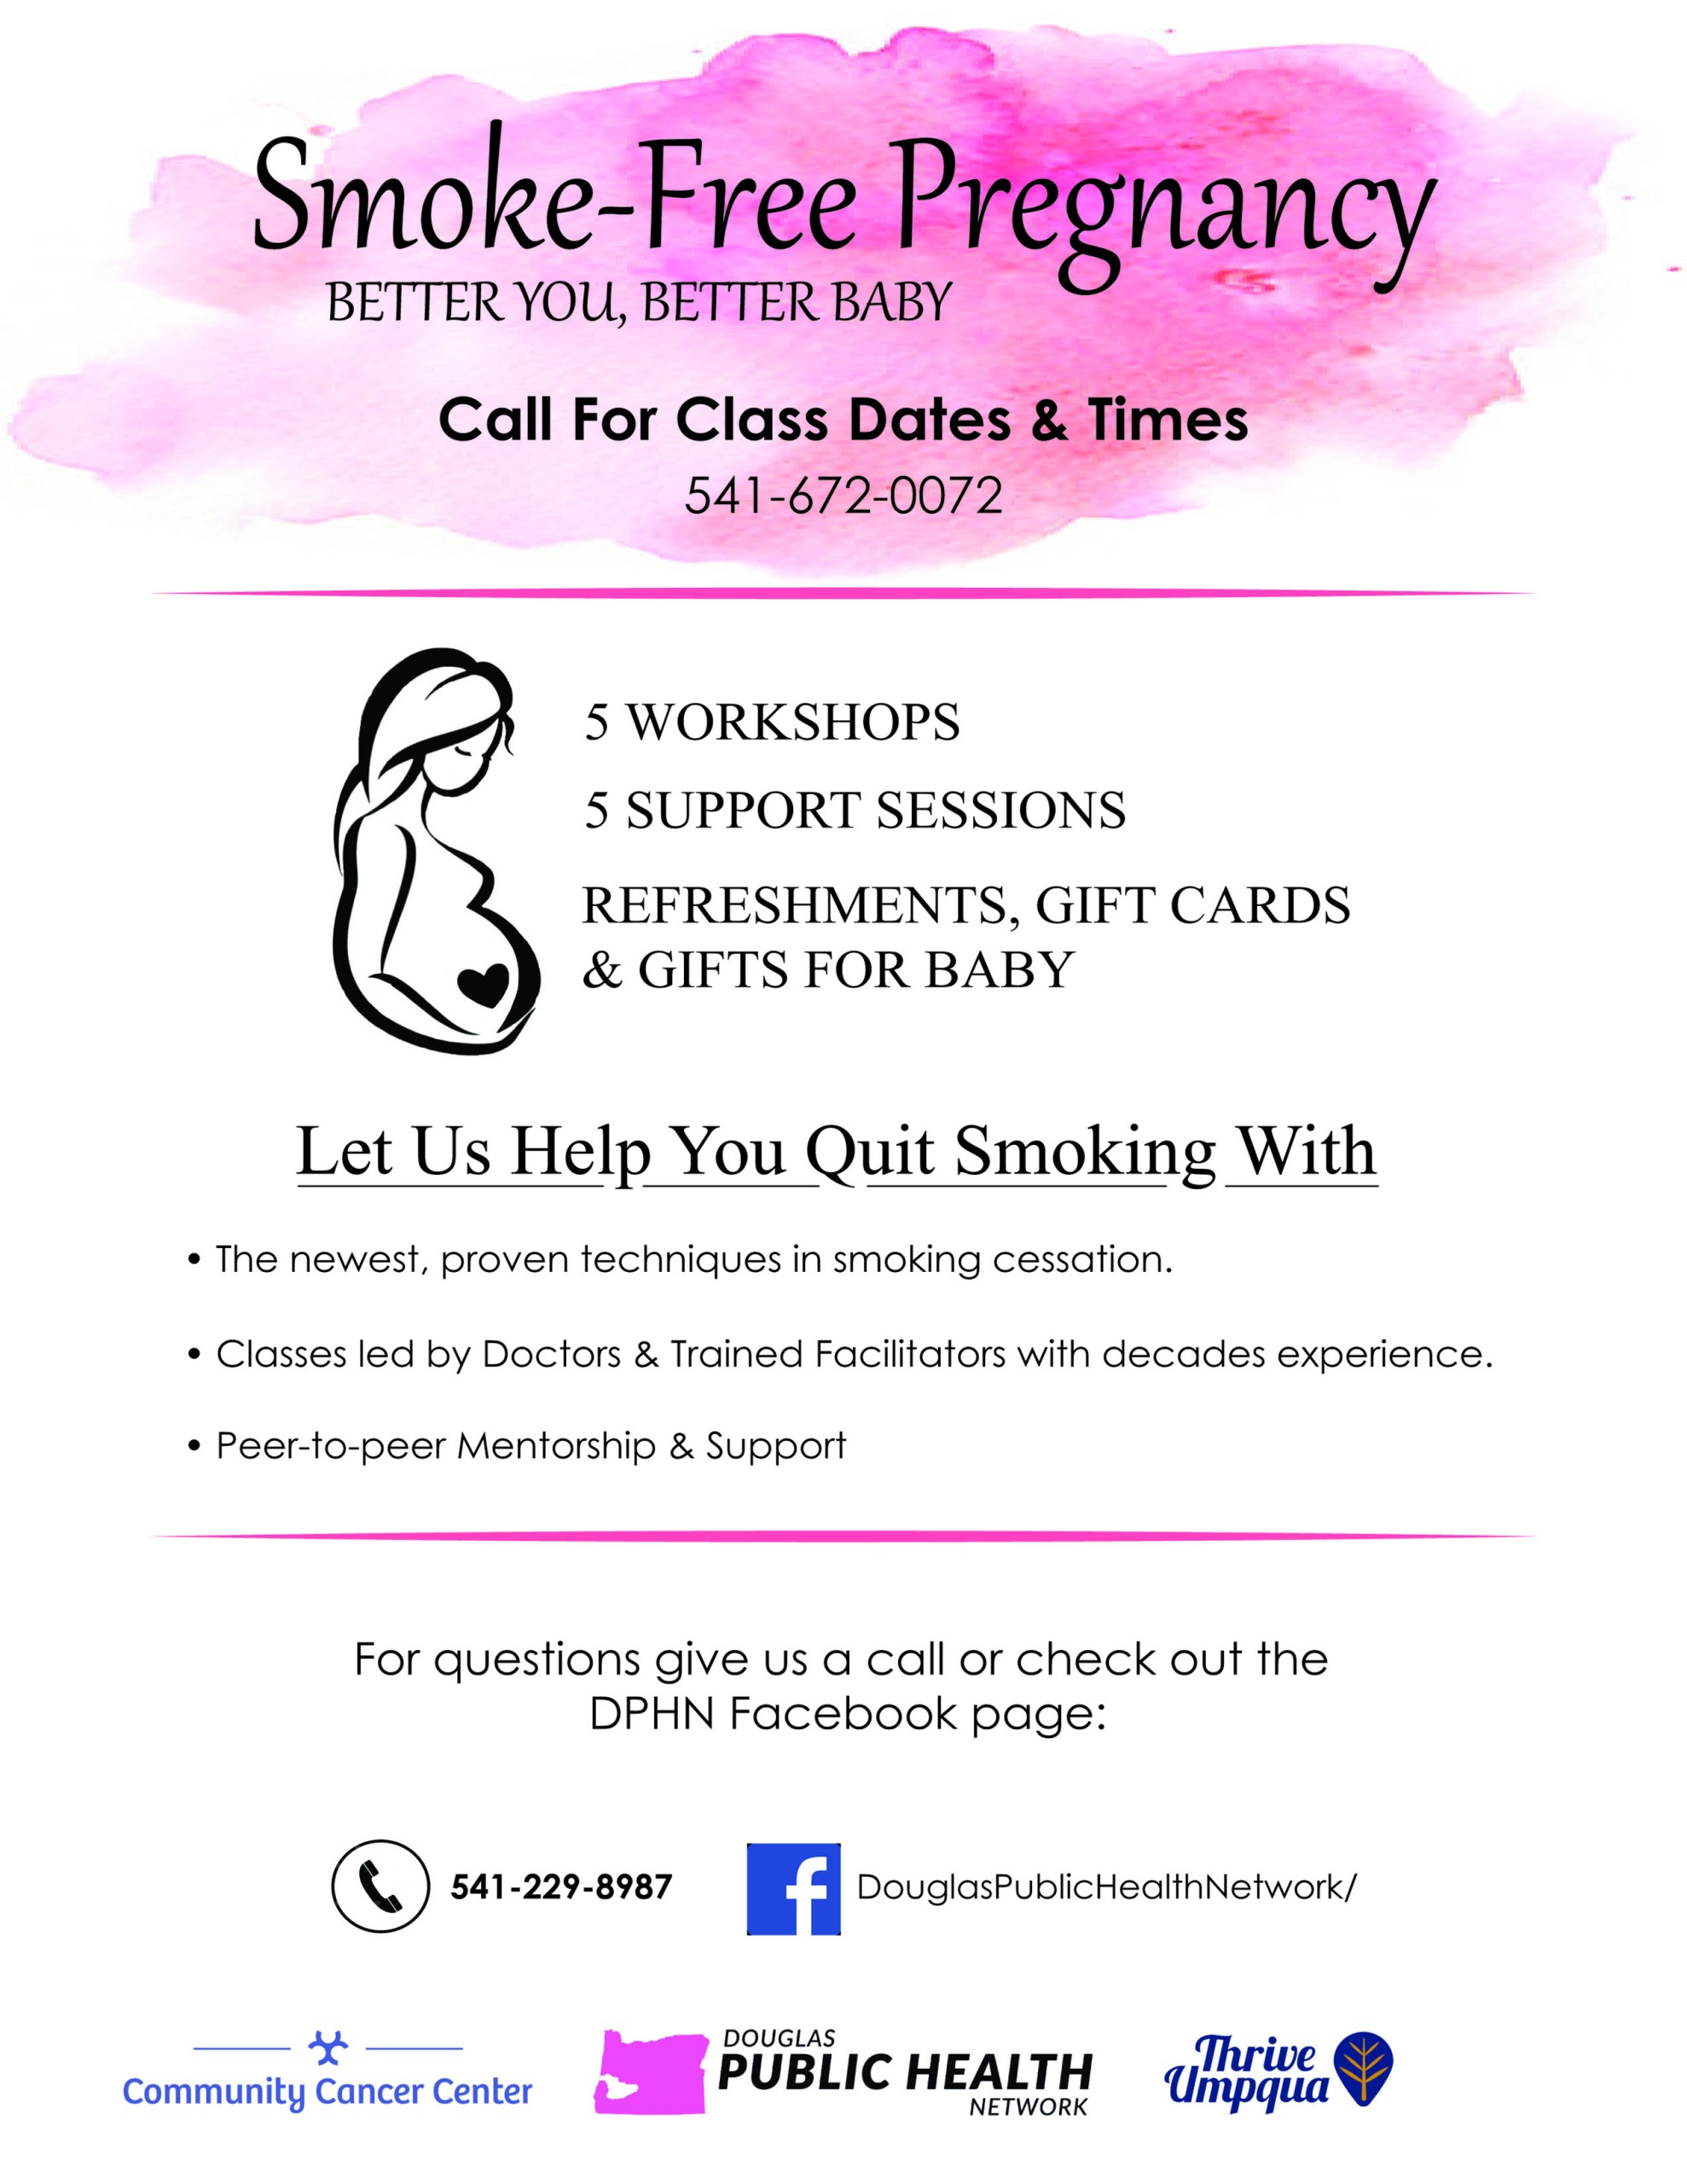 Smoke-Free Pregnancy Program